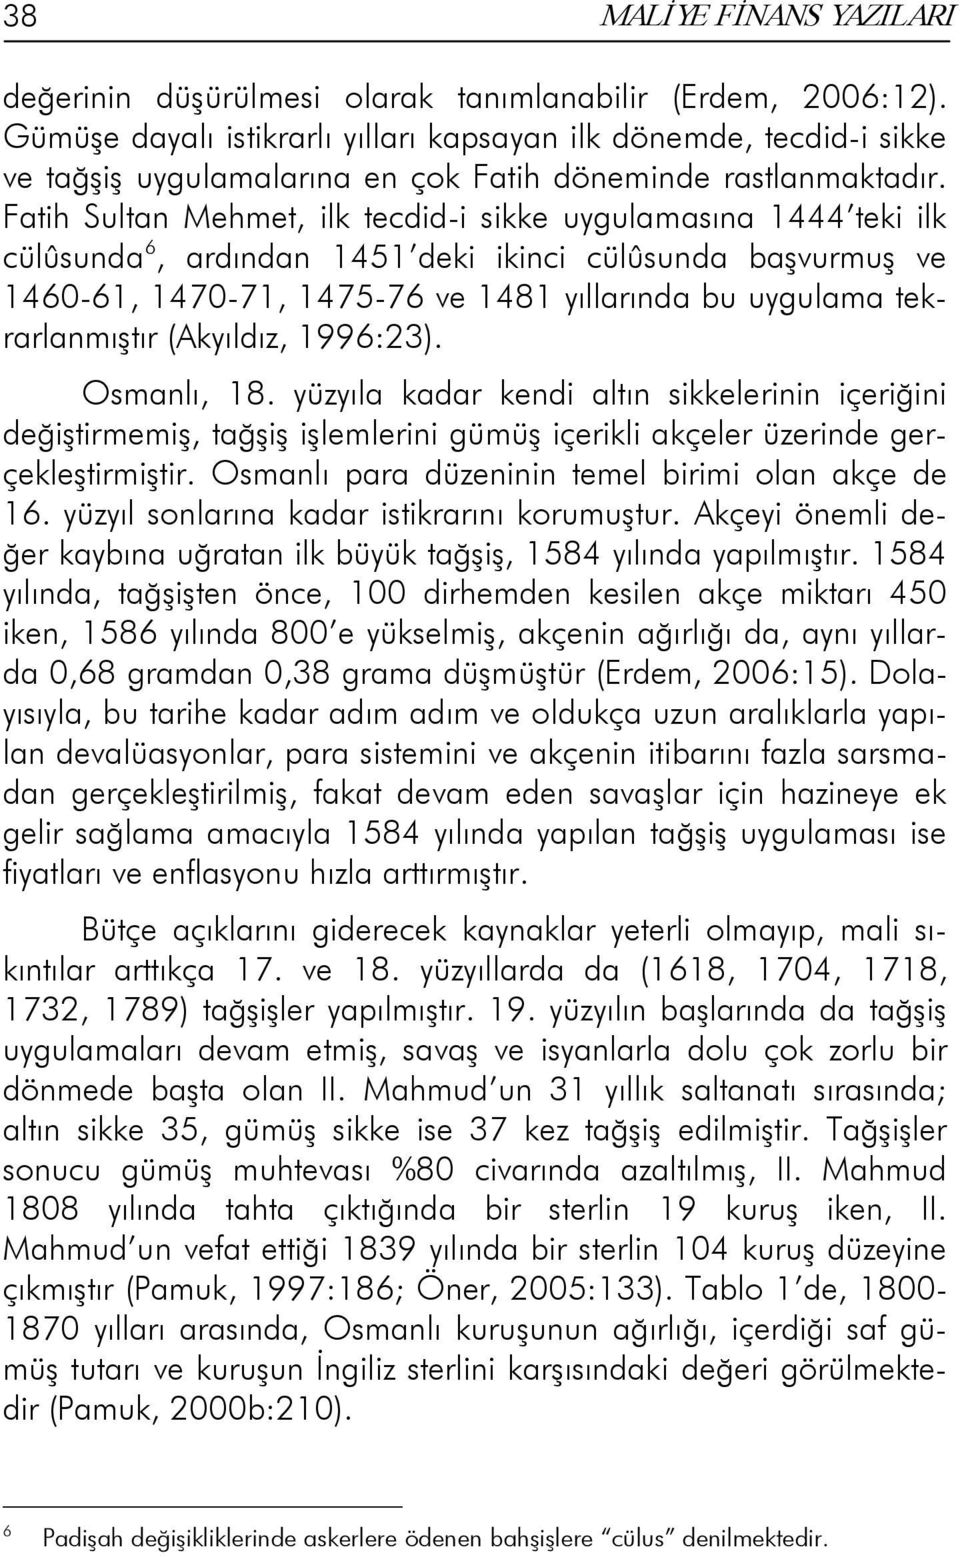 Fatih Sultan Mehmet, ilk tecdid-i sikke uygulamasına 1444 teki ilk cülûsunda 6, ardından 1451 deki ikinci cülûsunda başvurmuş ve 1460-61, 1470-71, 1475-76 ve 1481 yıllarında bu uygulama